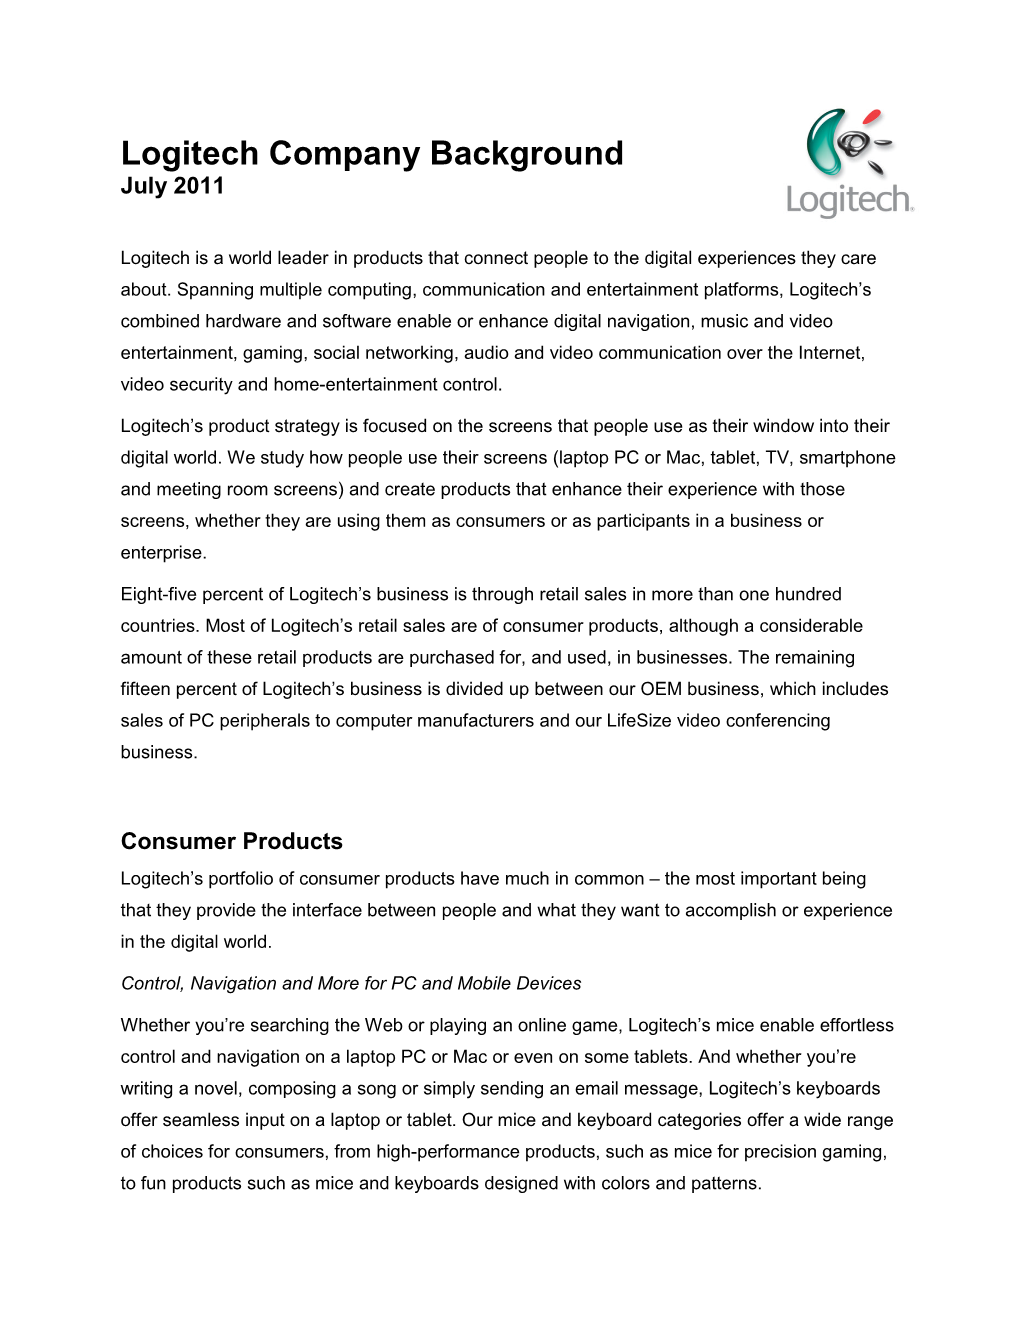 Logitech Company Background July 2011